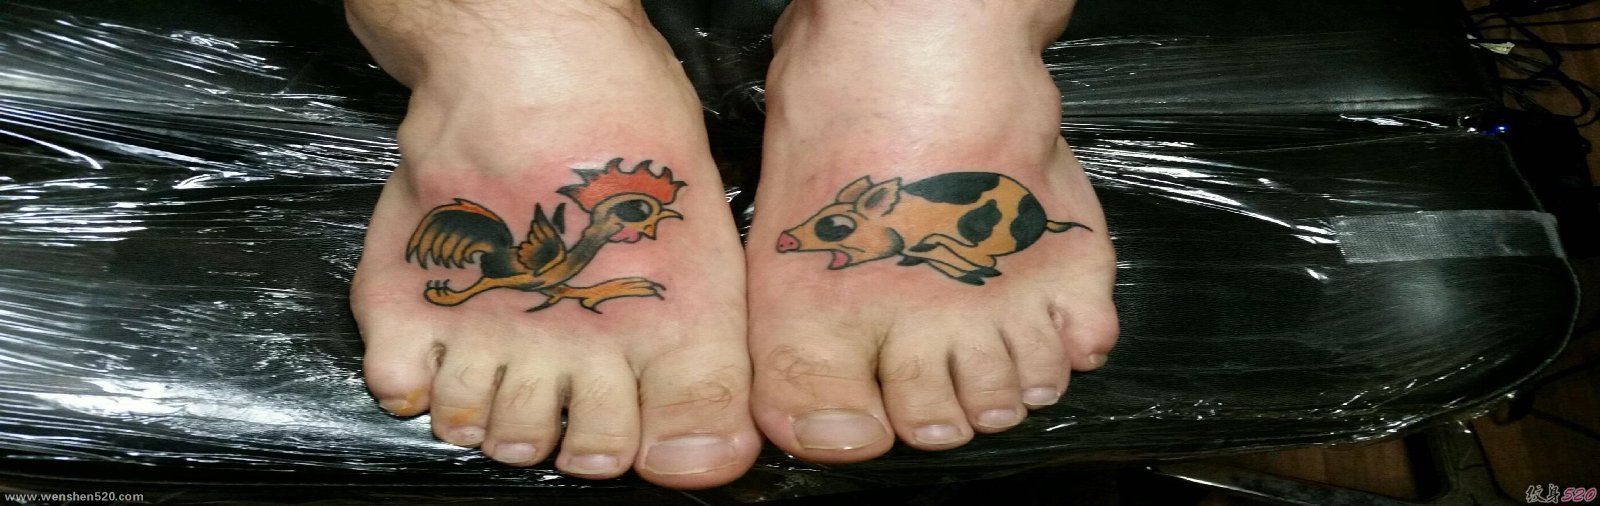 脚背上可爱的小公鸡和猪纹身动物图案纹身